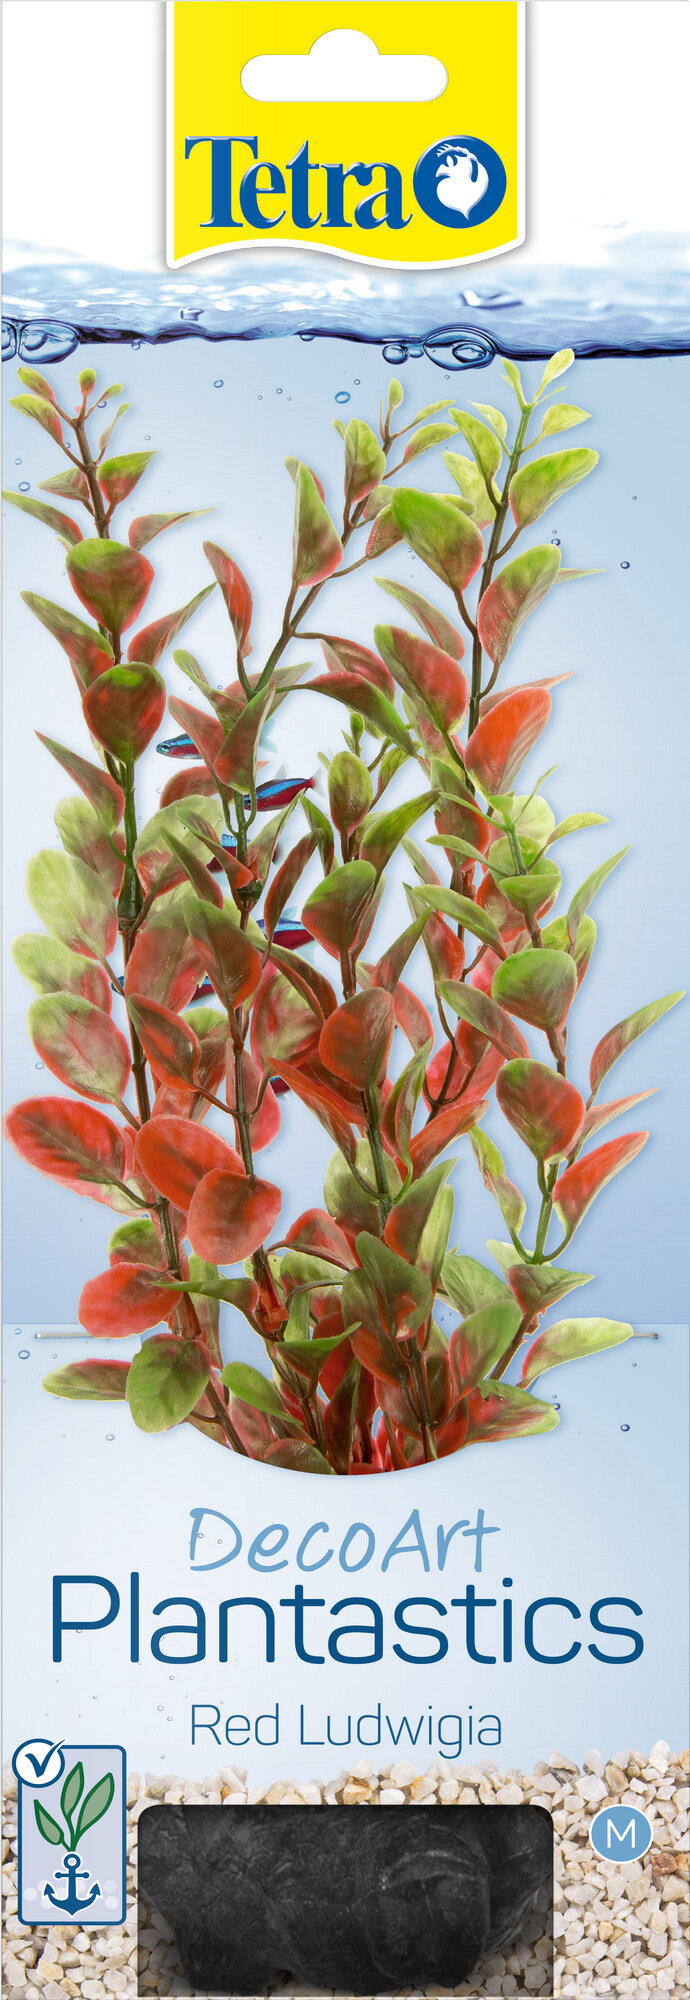 Растение Tetra DecoArt Plantastics Red Ludvigia (M) 23 см, с утяжелителем